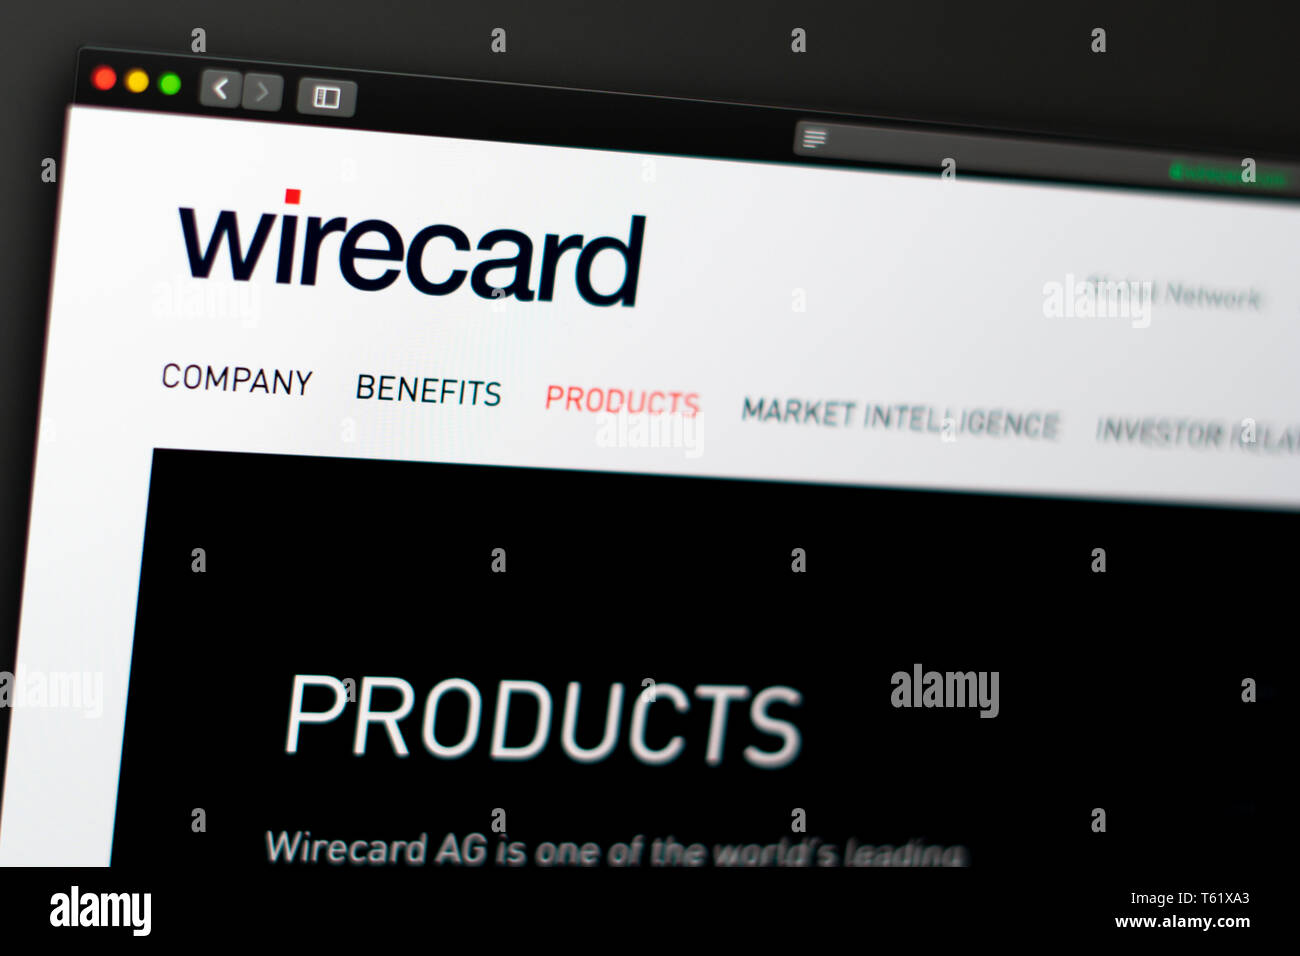 Wirecard Startseite. Nahaufnahme von Wirecard Logo. Kann als illustrative für Medien, Marketing oder Business Konzept verwendet werden. Stockfoto